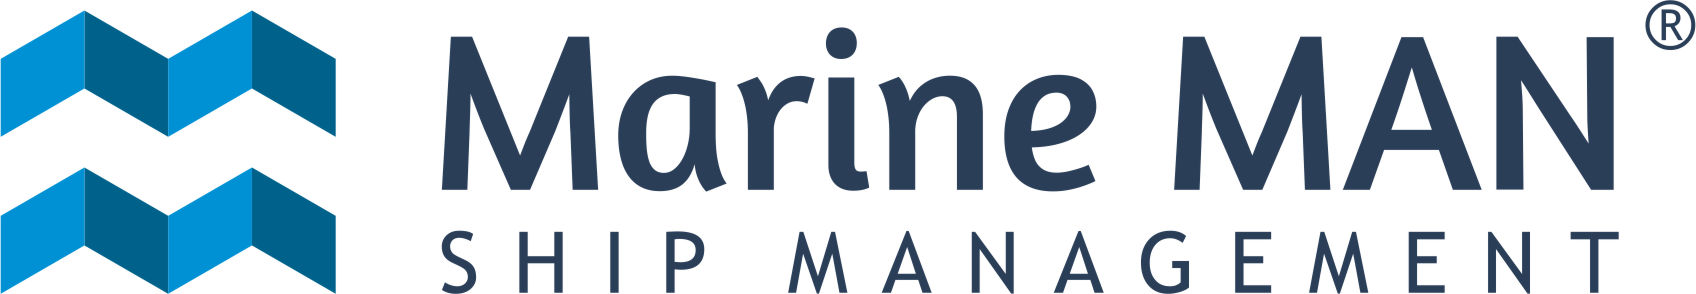 MARINE MAN LTD logo